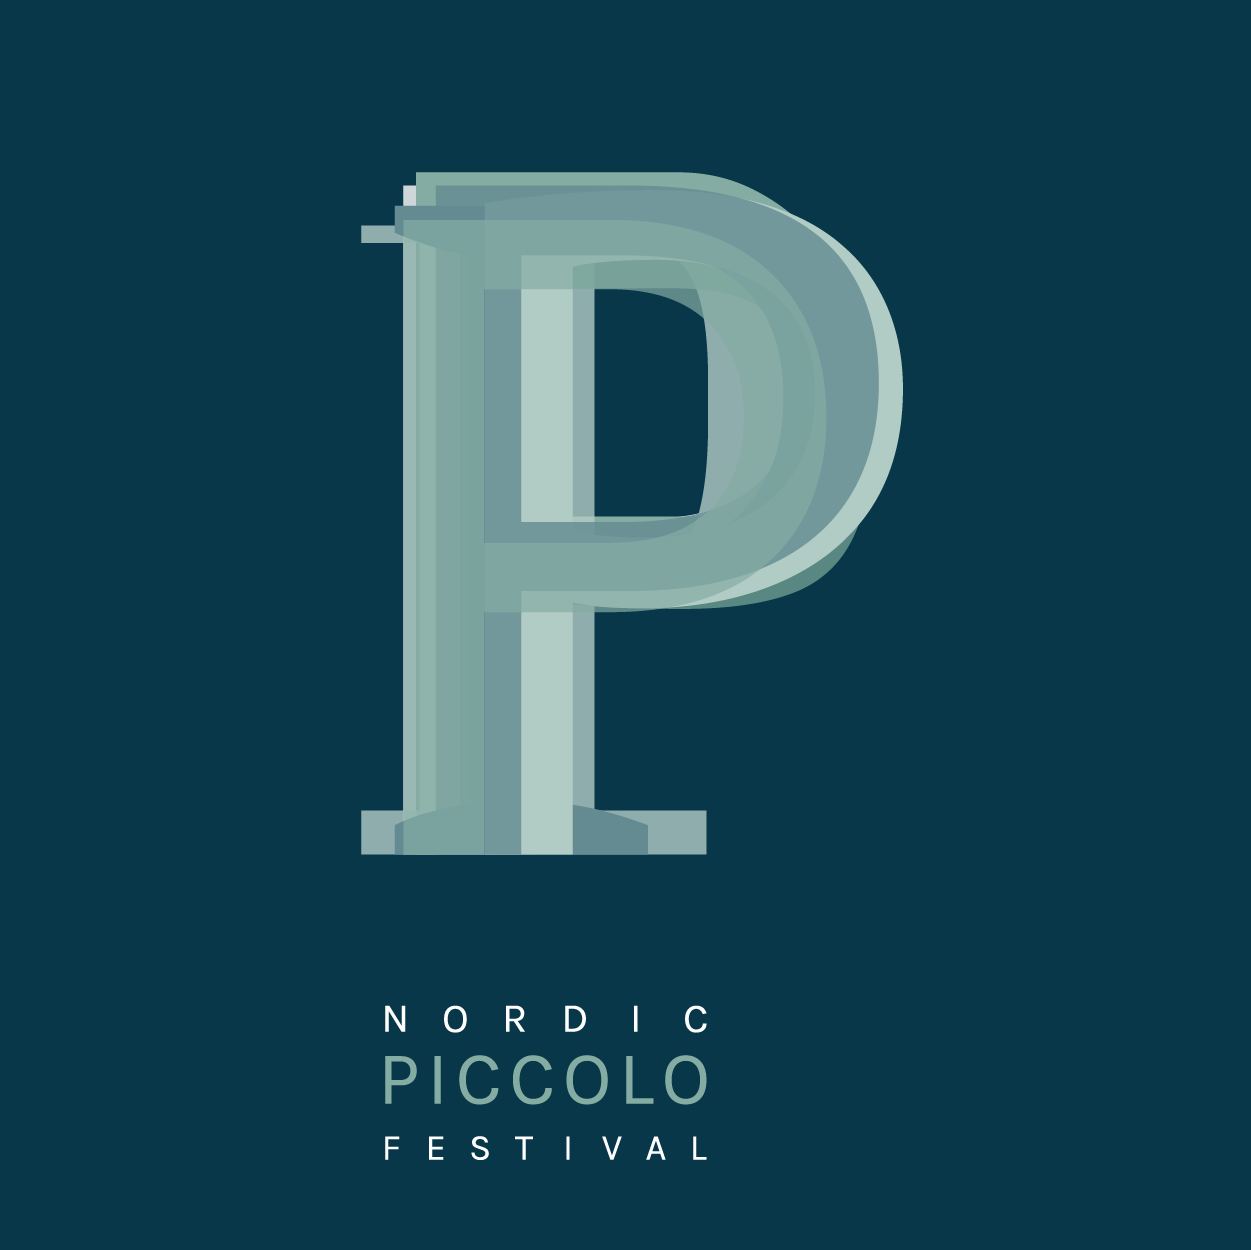 logo nordic piccolo festival dark background